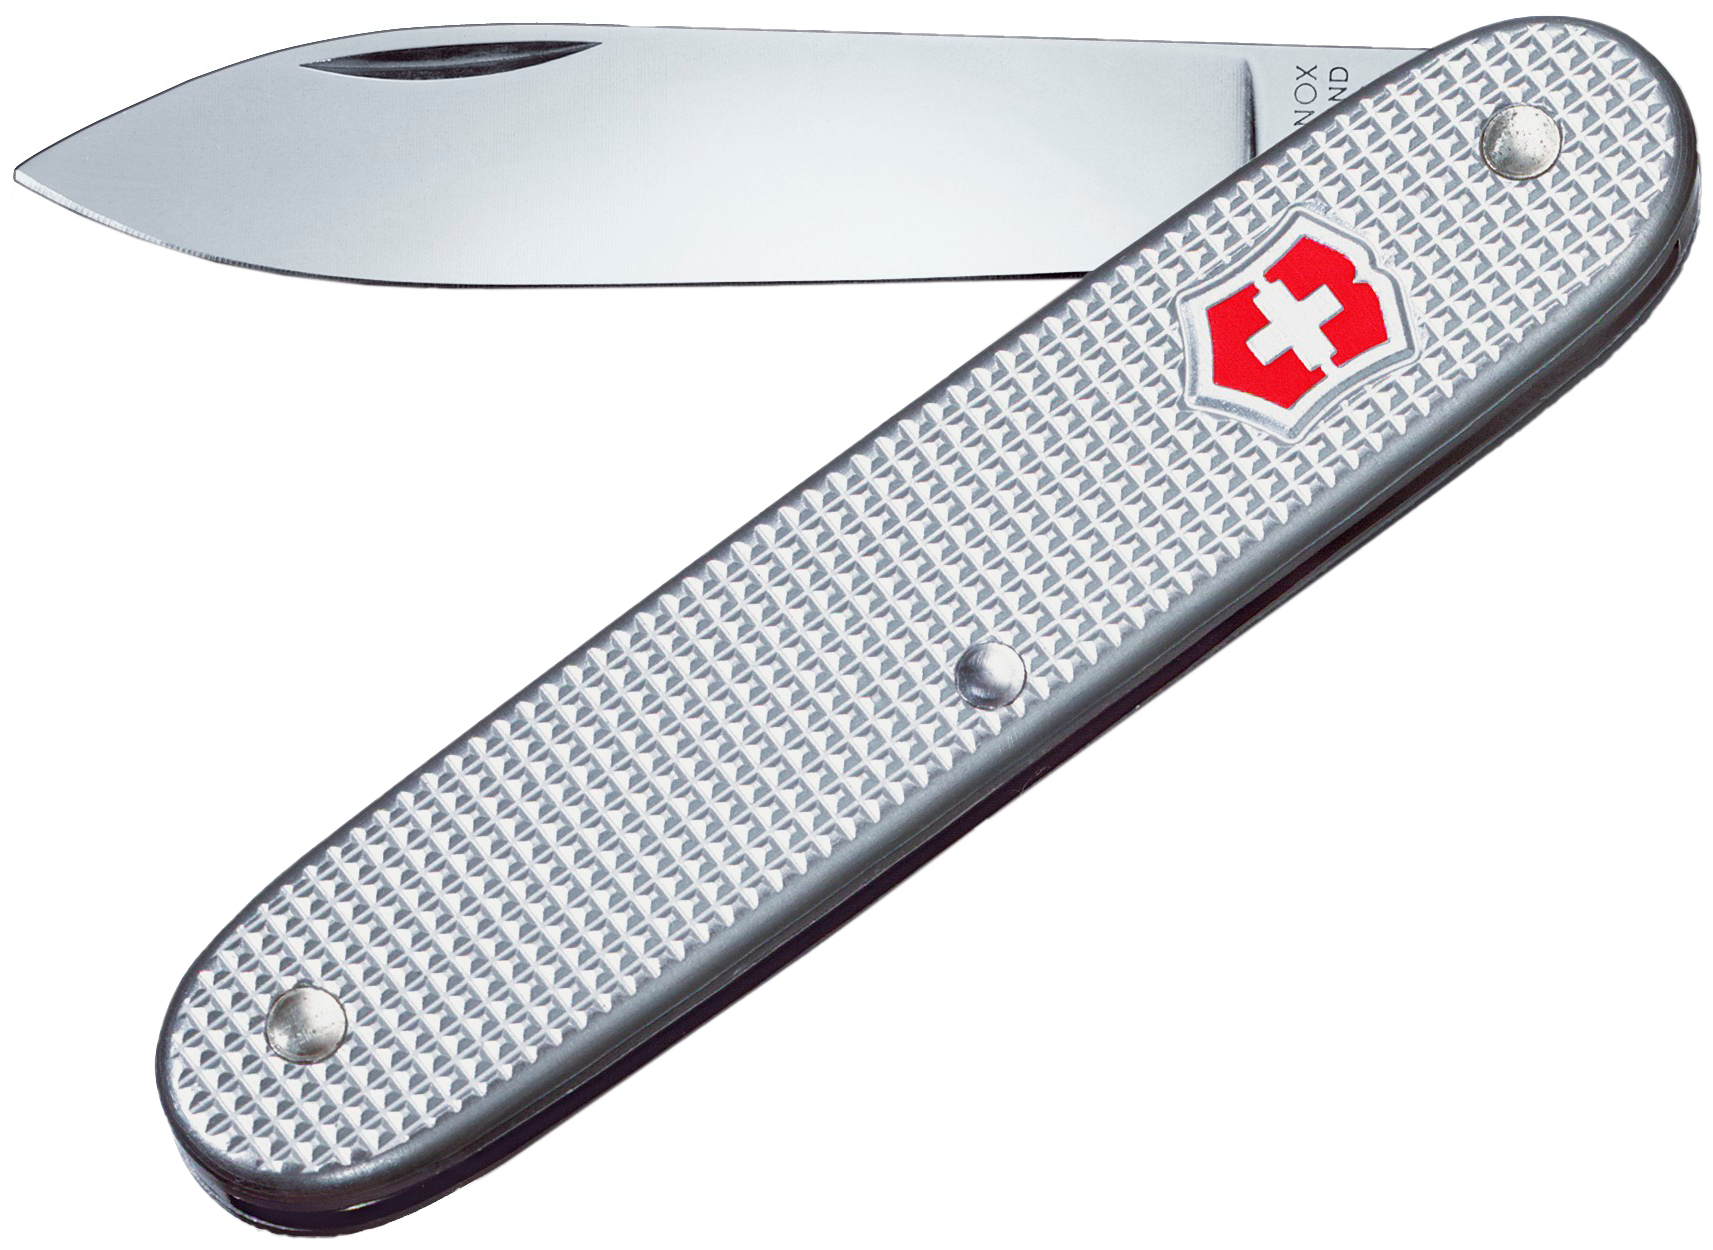 Нож перочинный VICTORINOX Pioneer, 93 мм, 1 функция, алюминиевая рукоять, серебристый